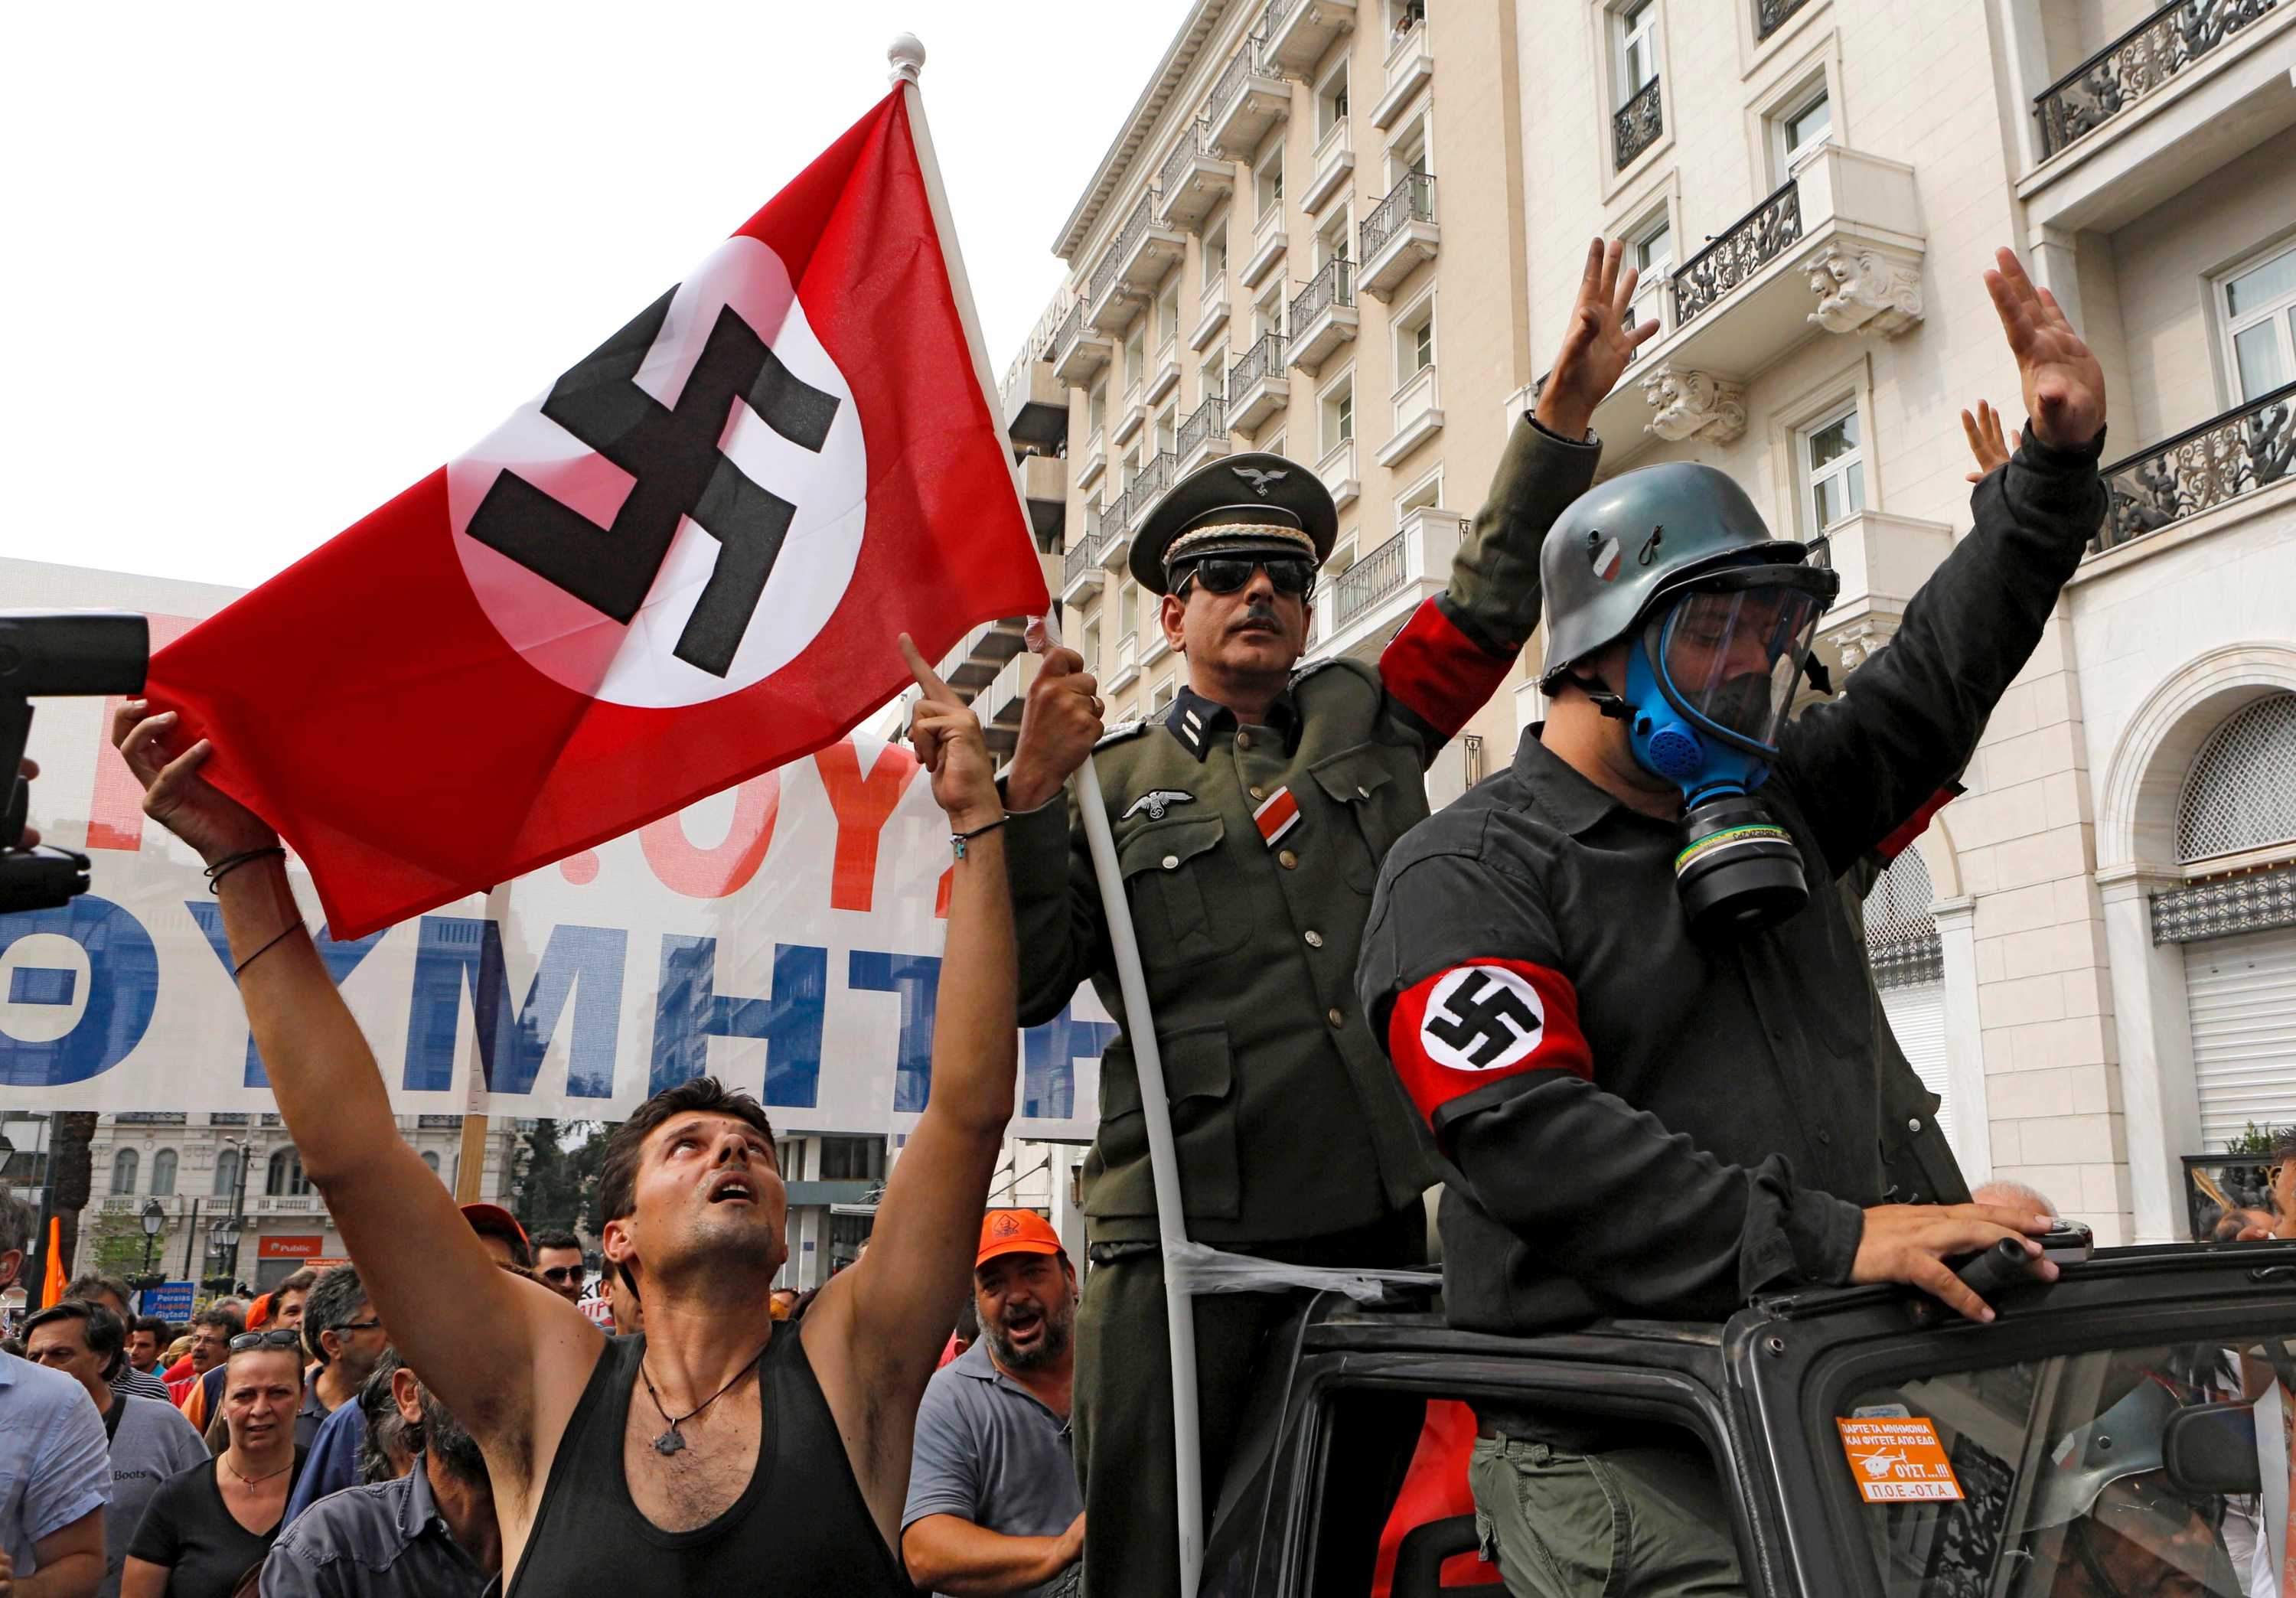 Национал трудовой. Флаг неонацистов Германии. Неонацисты в Германии 2020. Неонацисты в Германии 2022. Современные нацисты.